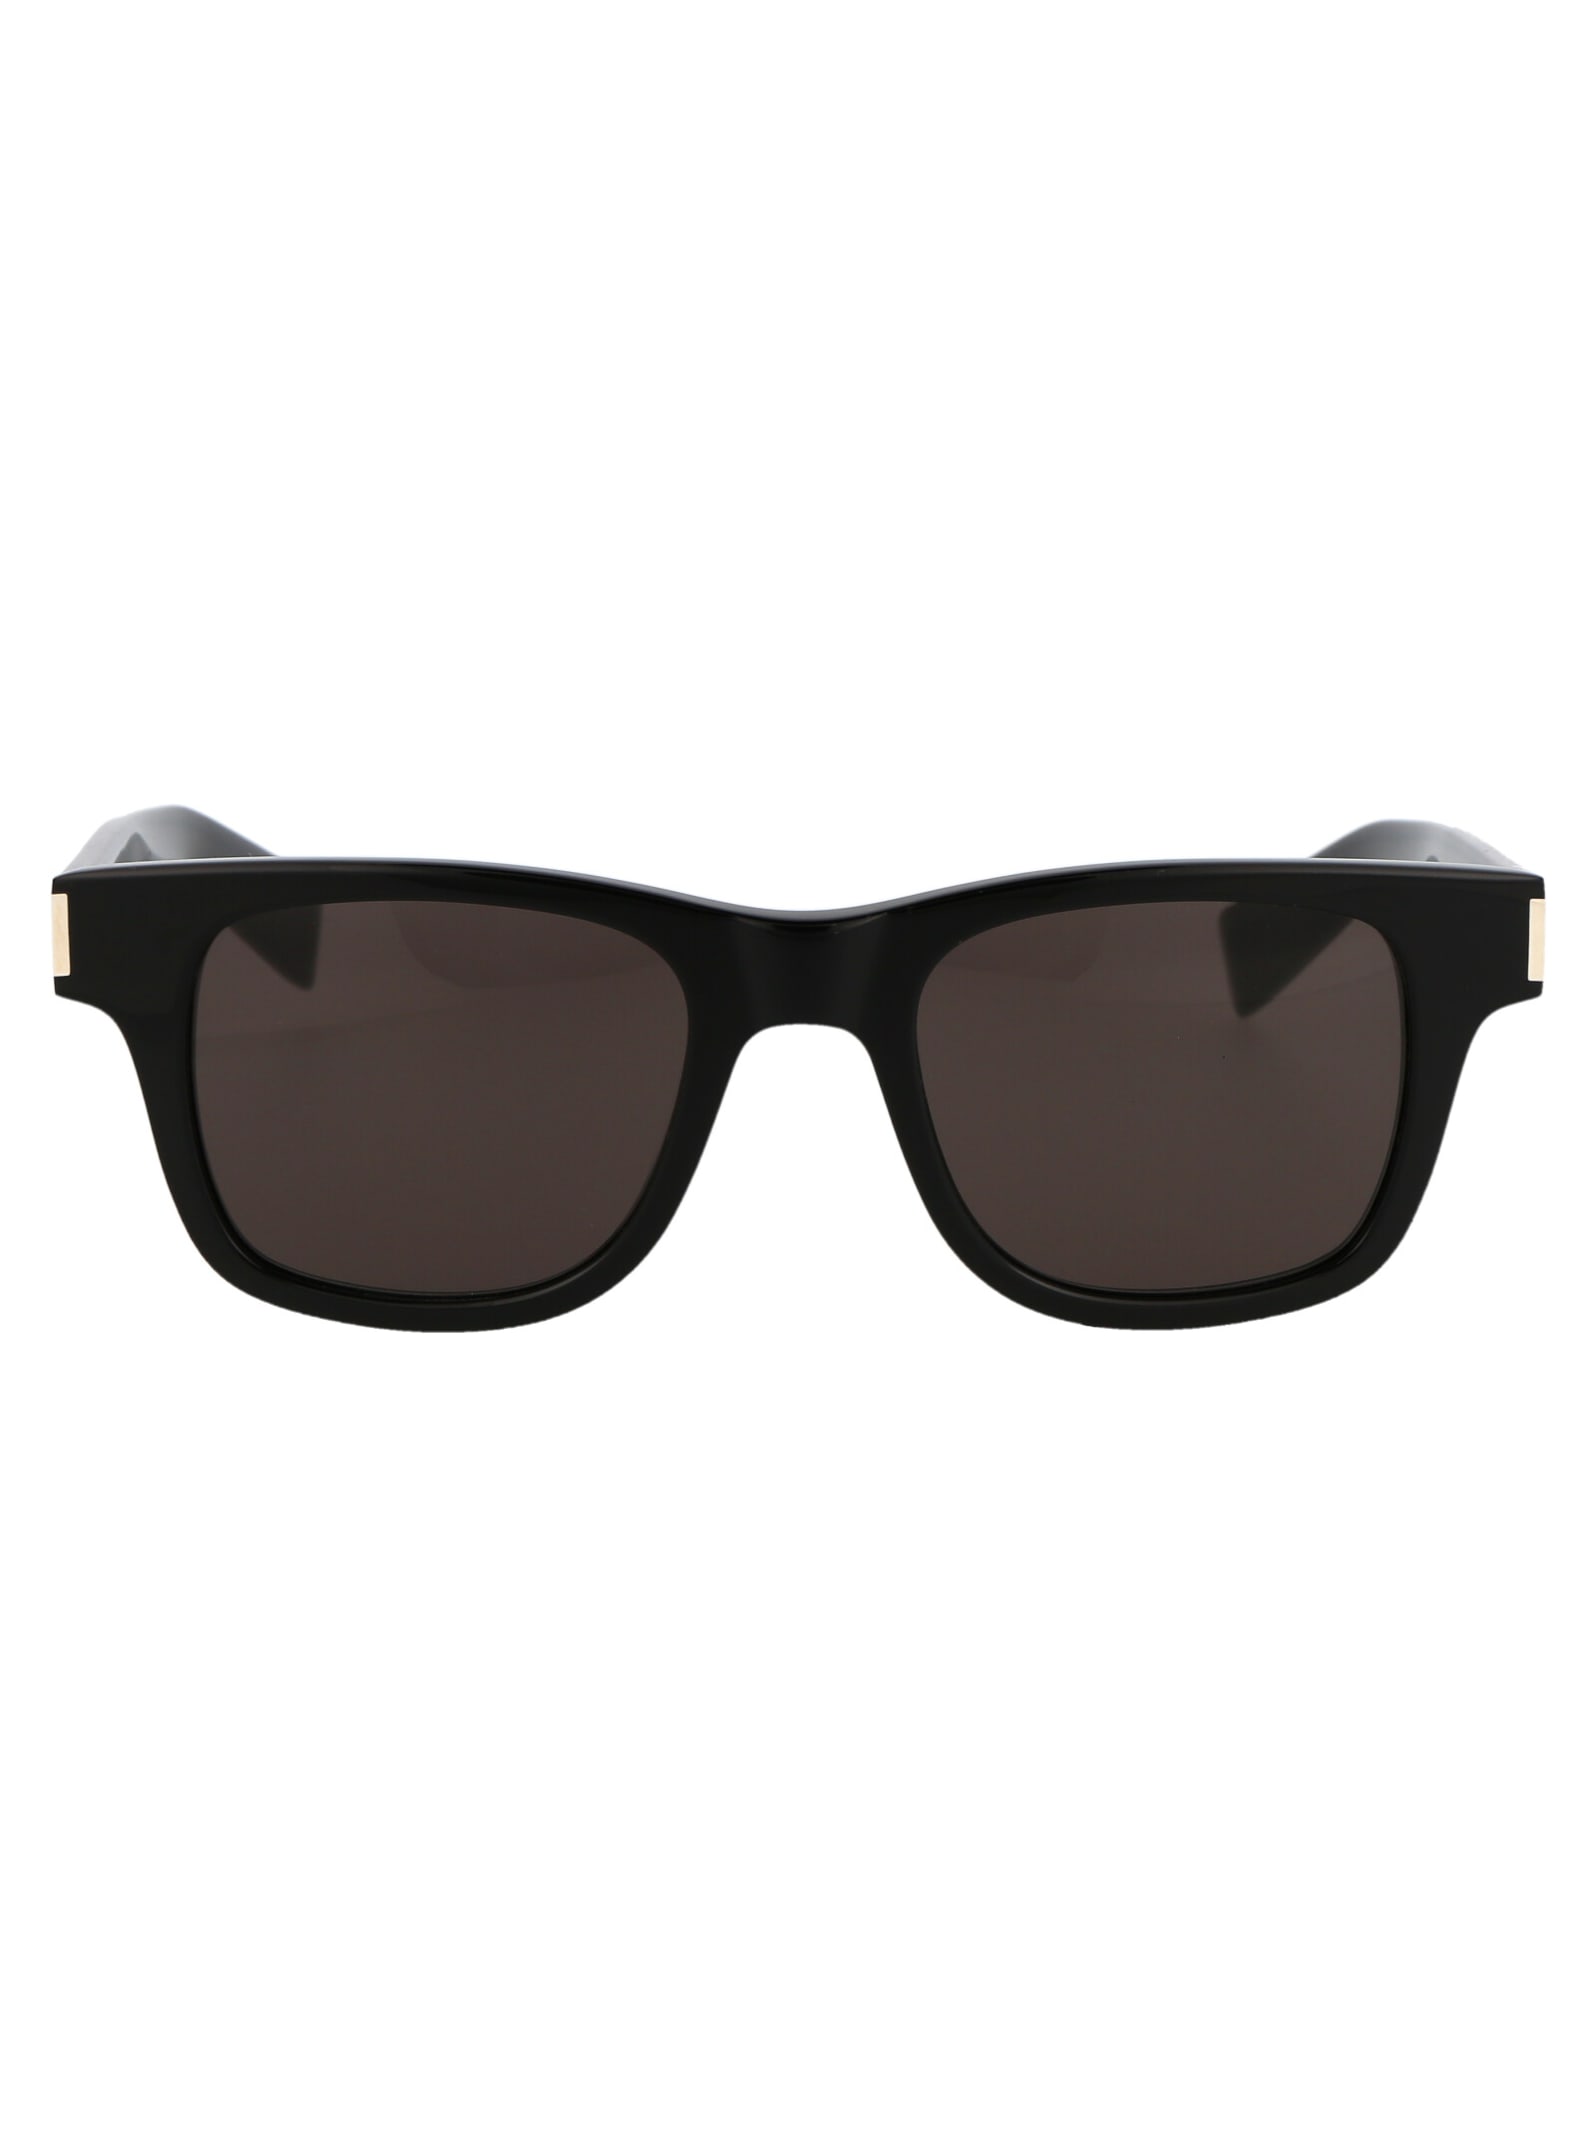 Saint Laurent Eyewear Sl 564 Sunglasses